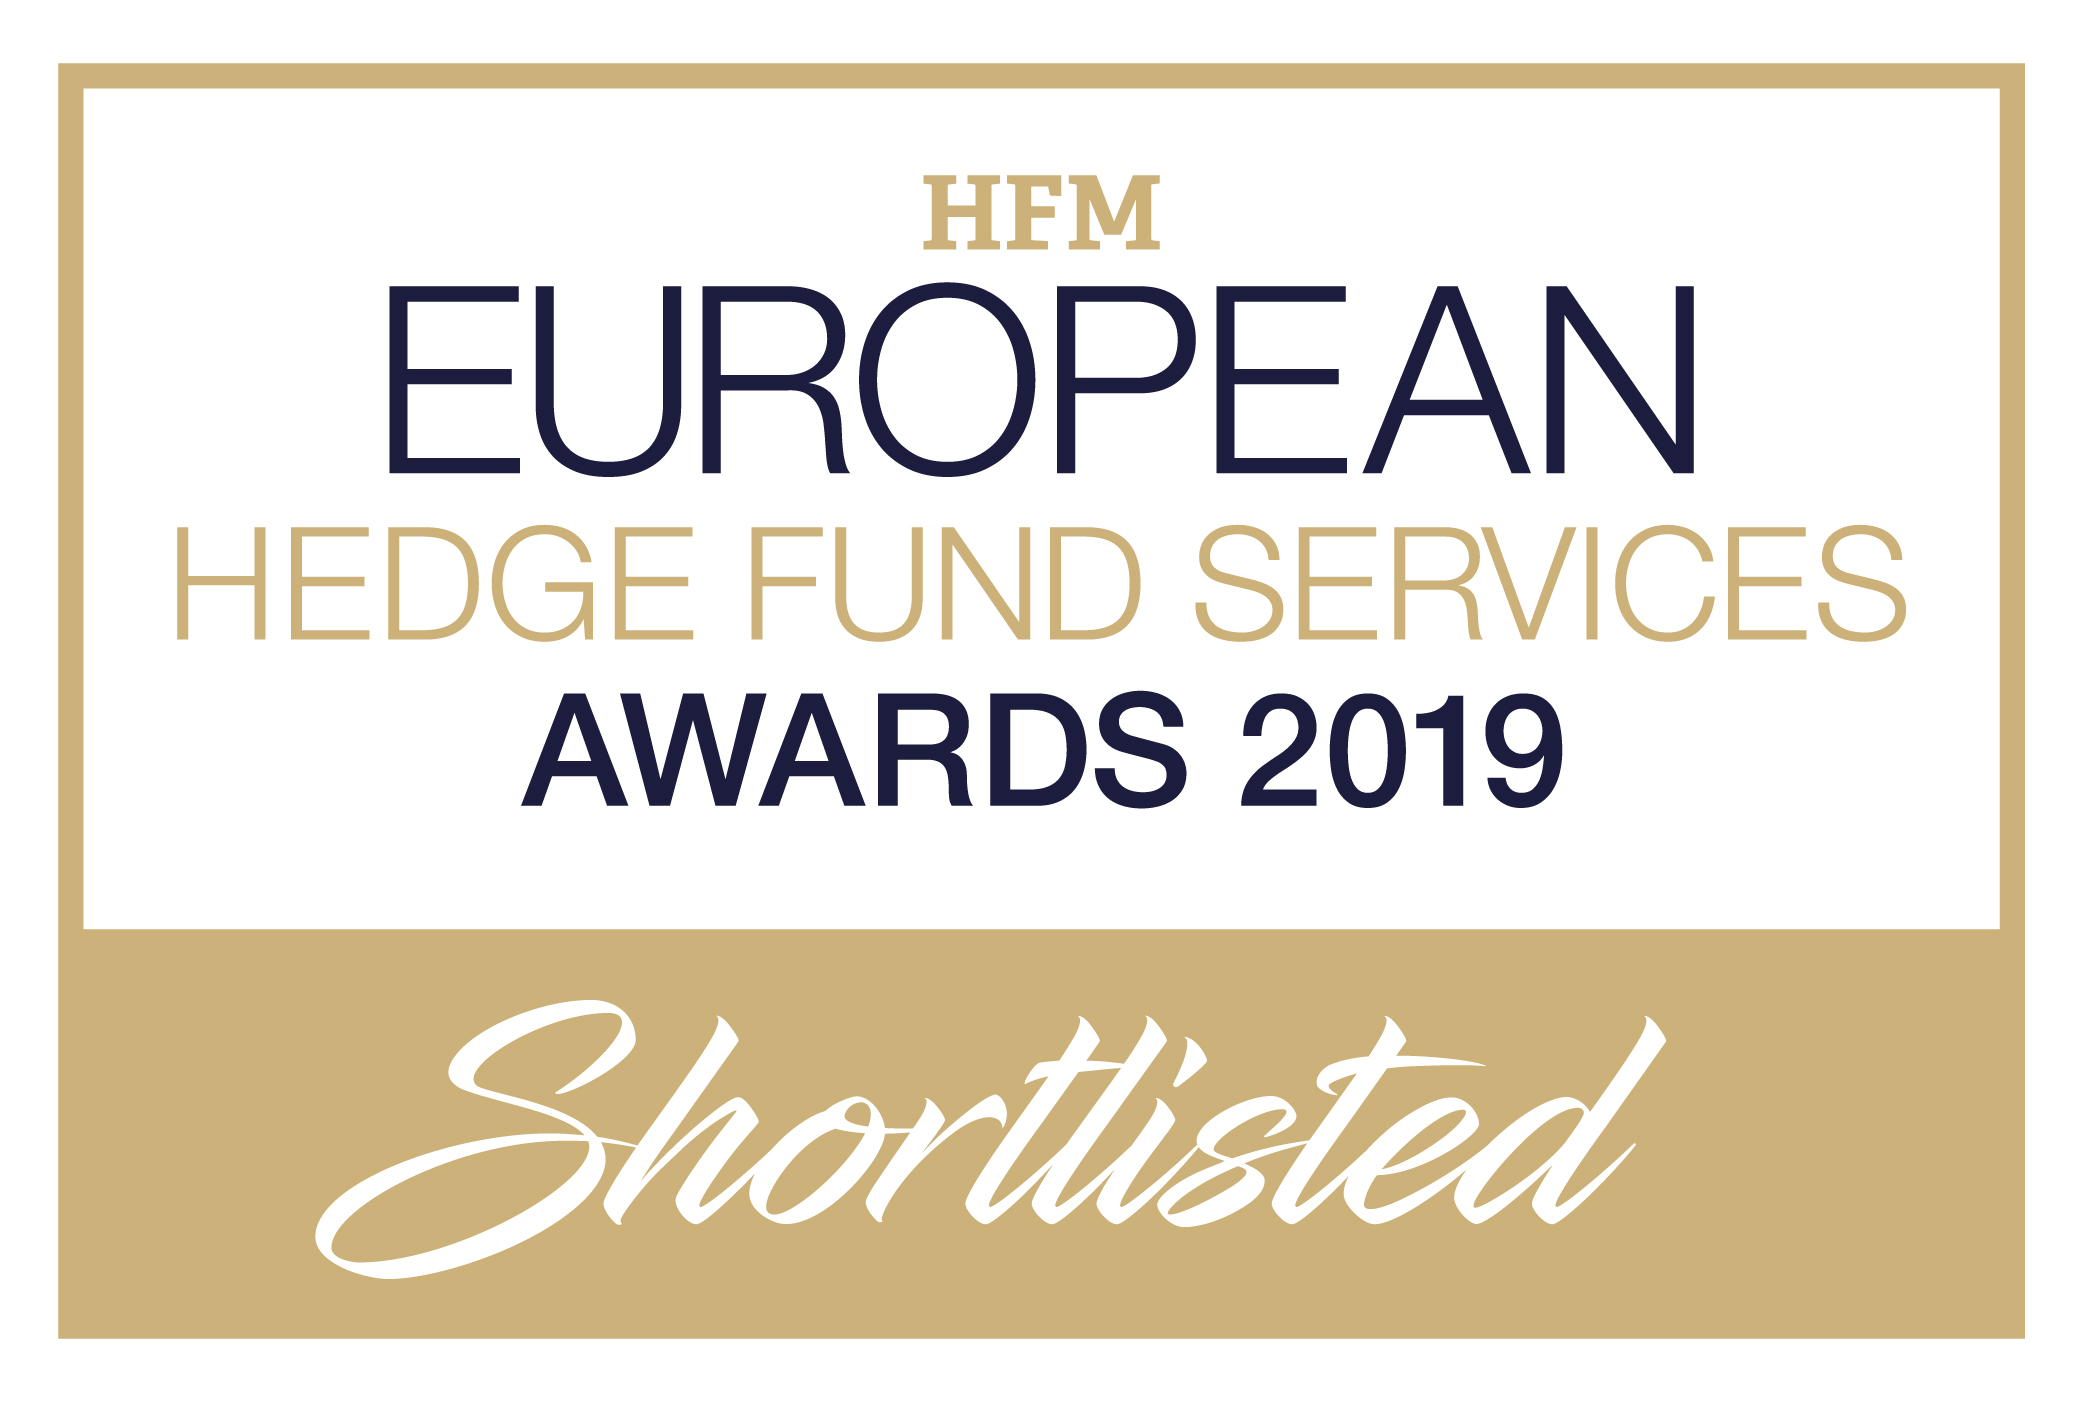 HFM European Services Awards 2019_ShortlistedLogo